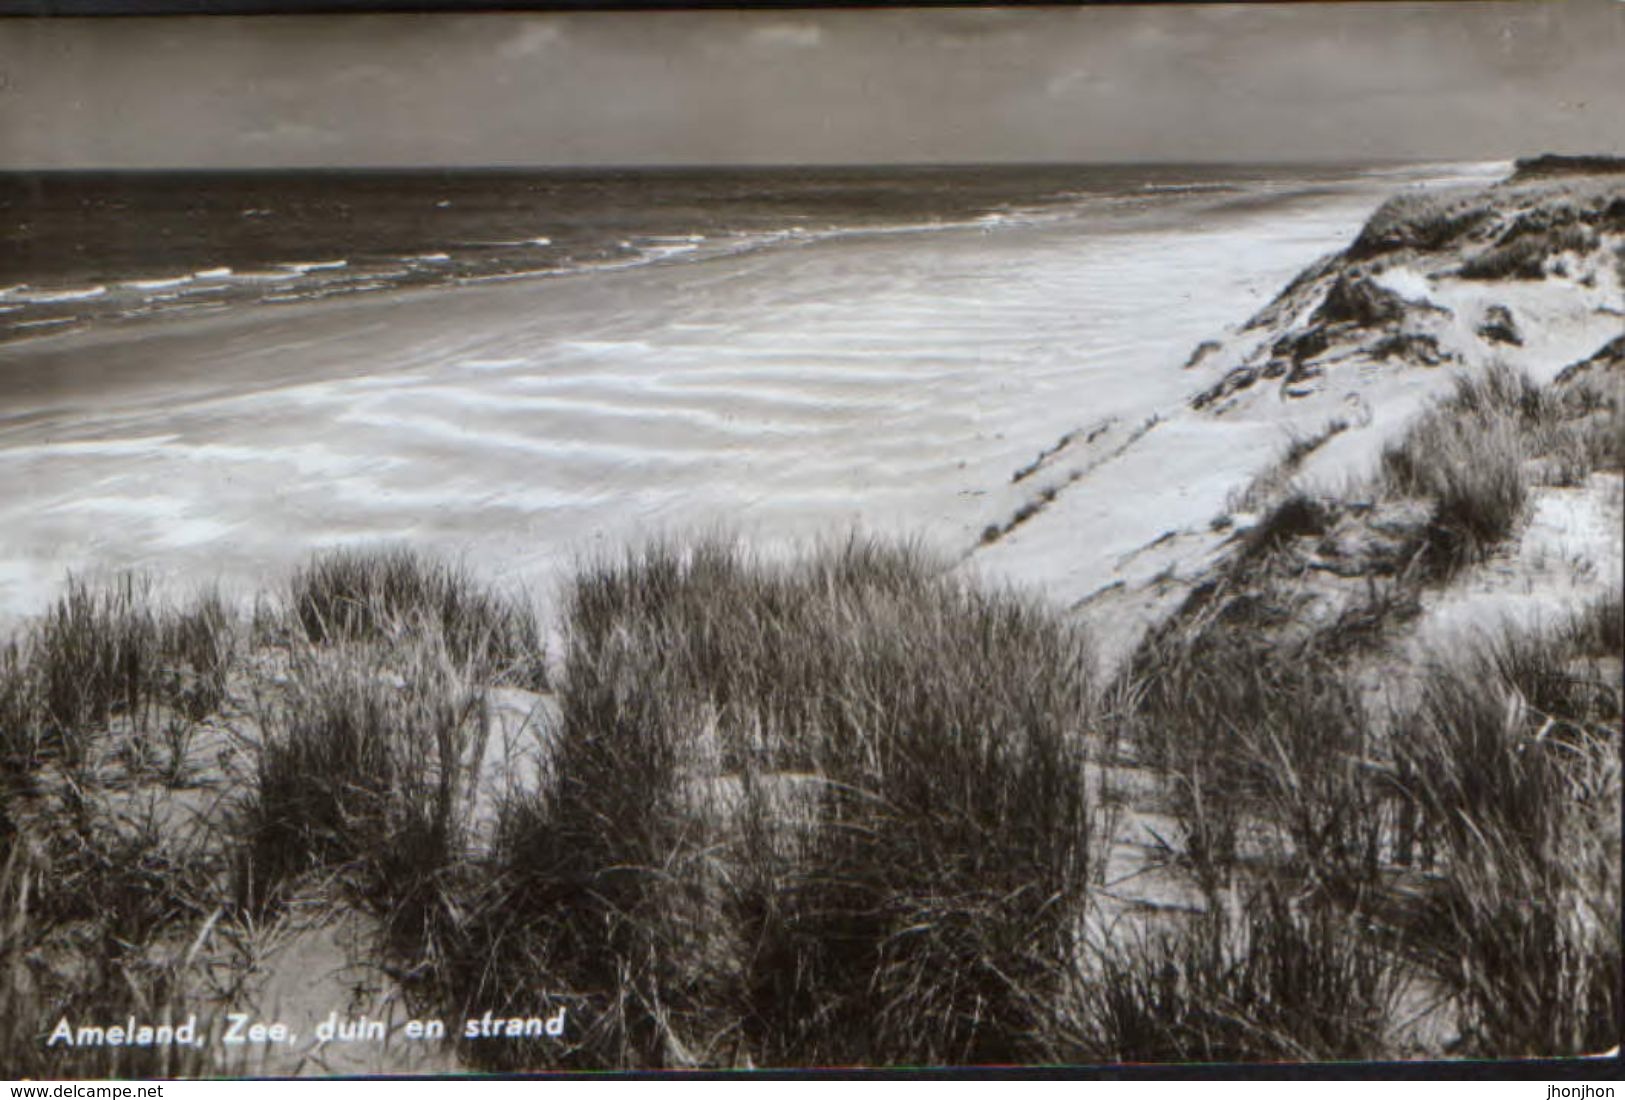 Nederland  - Postcard Unused  -  Ameland - Ameland, Sea, Dune And Beach - Ameland